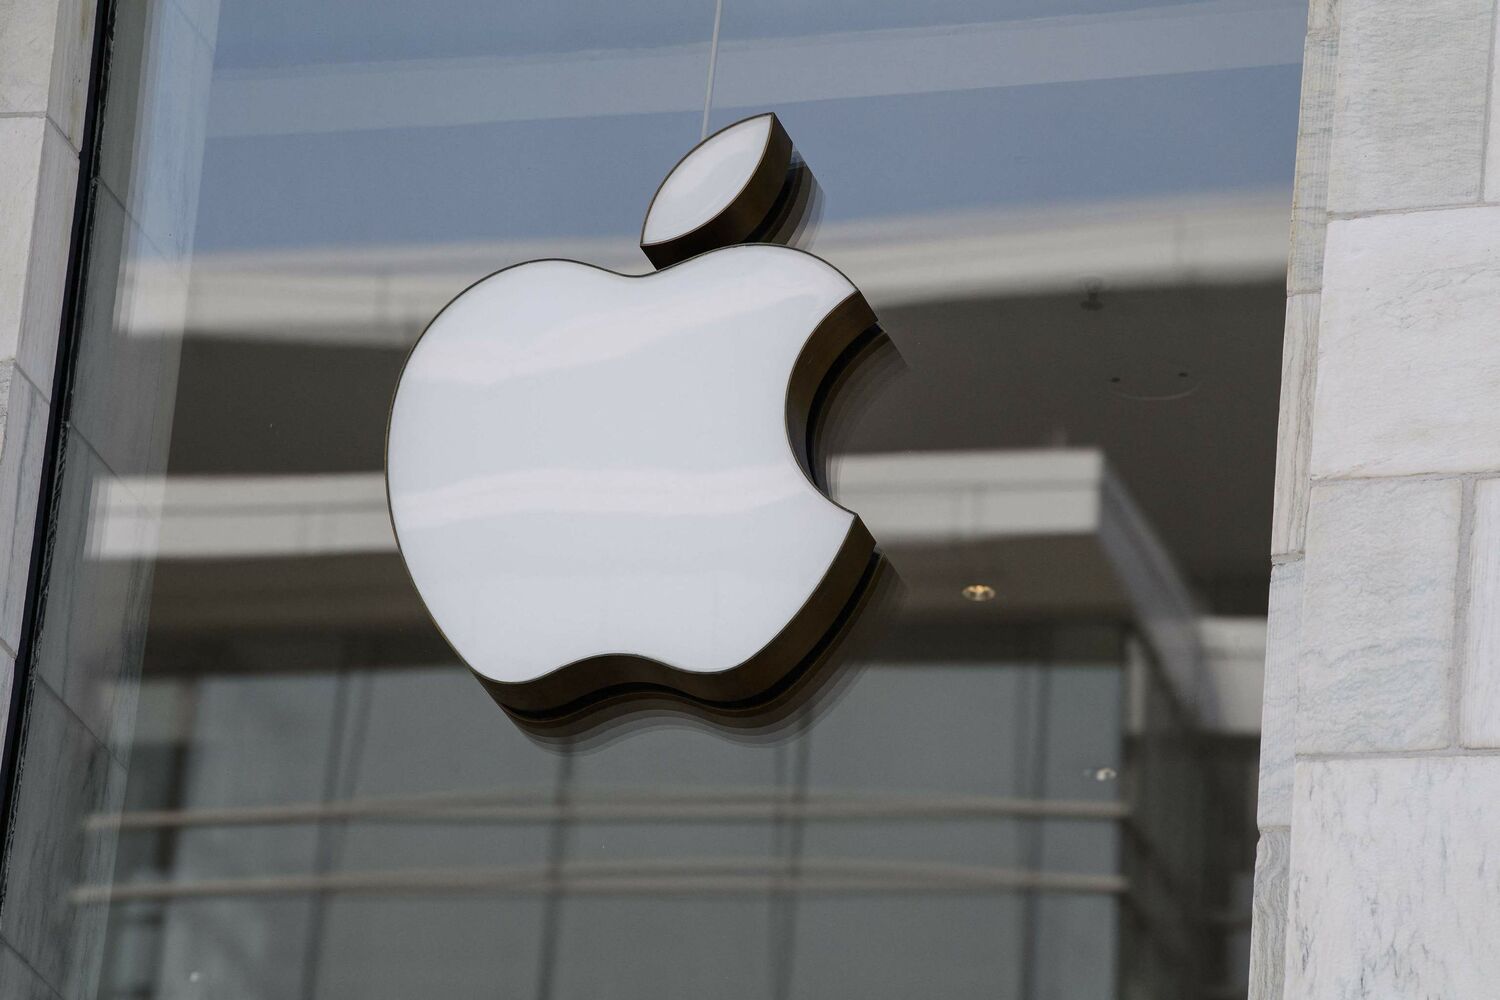 Apple lanzaría un nuevo iPhone más delgado